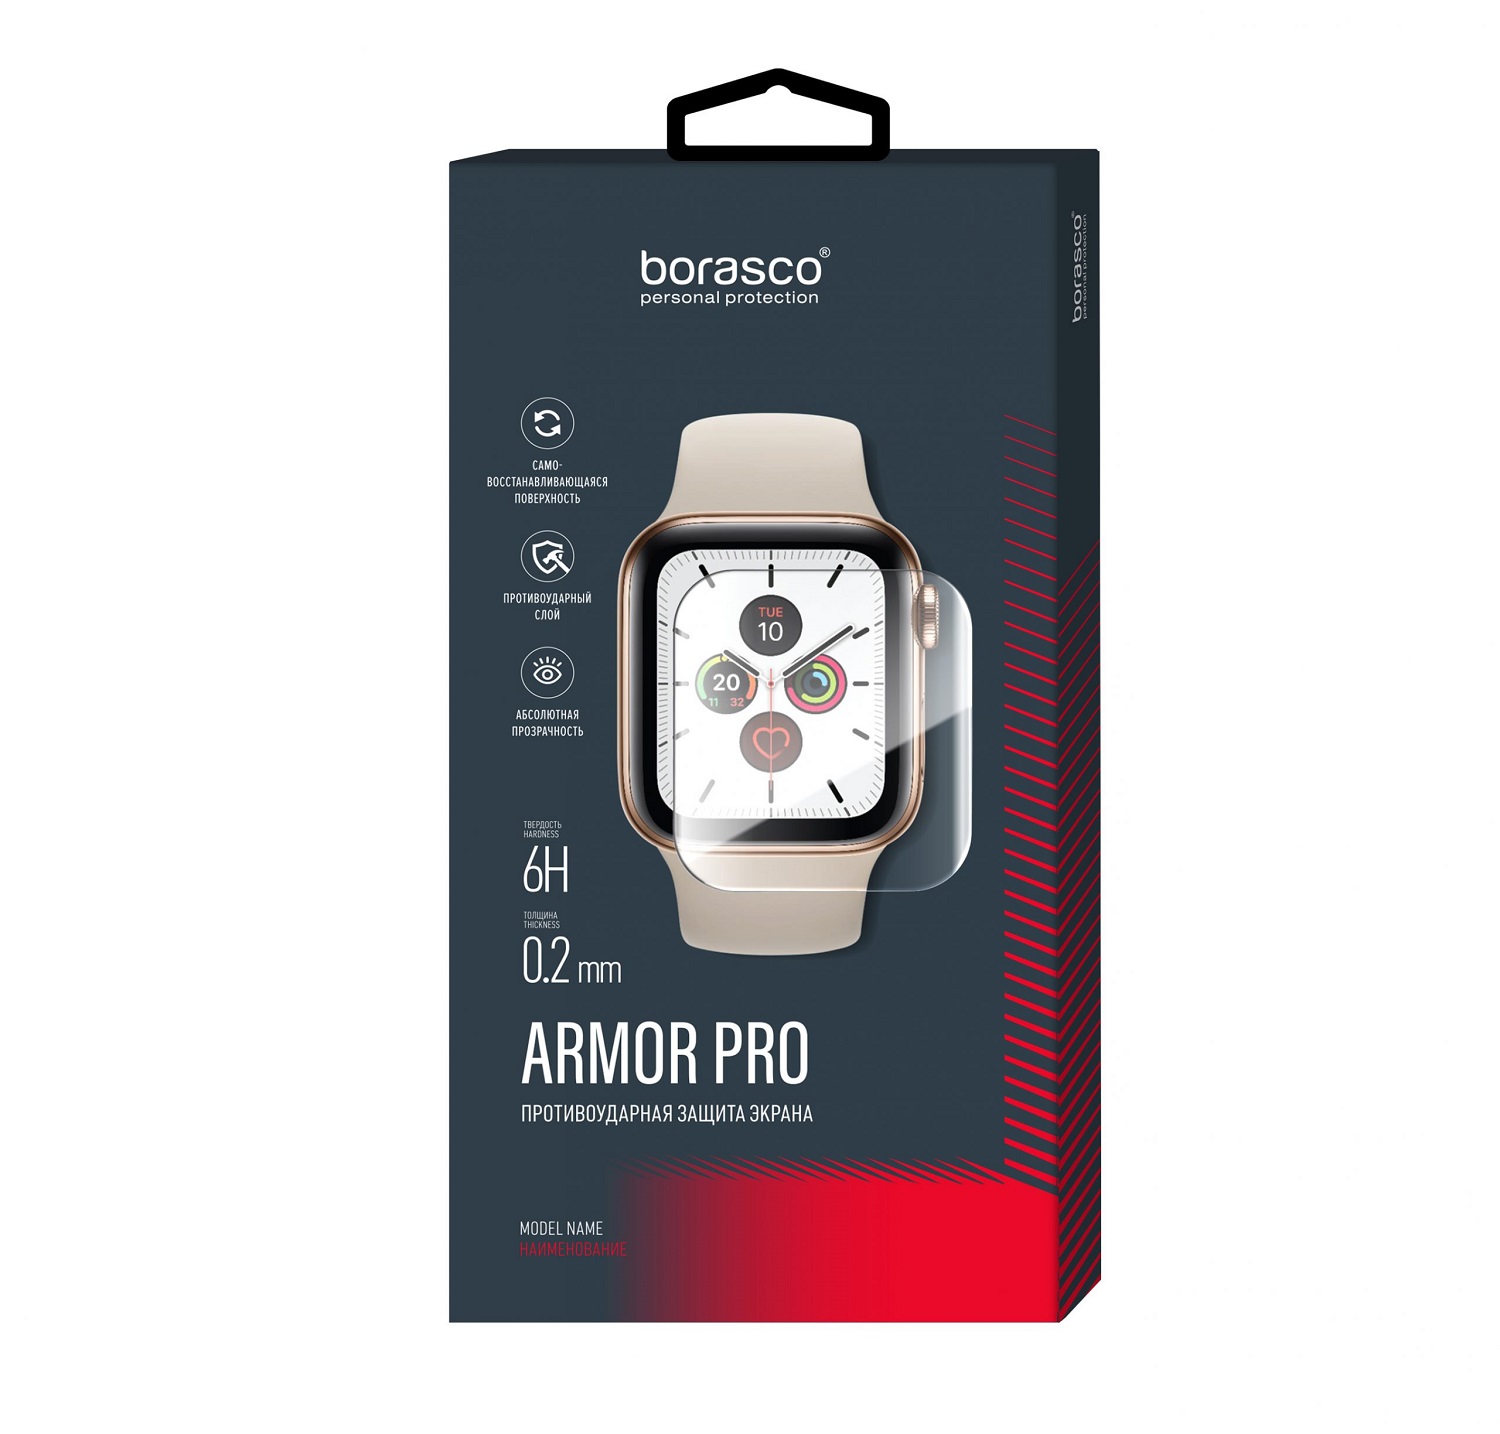 Защита экрана BoraSCO Armor Pro для Xiaomi Mi Watch защита экрана borasco armor pro для oneplus 9 pro